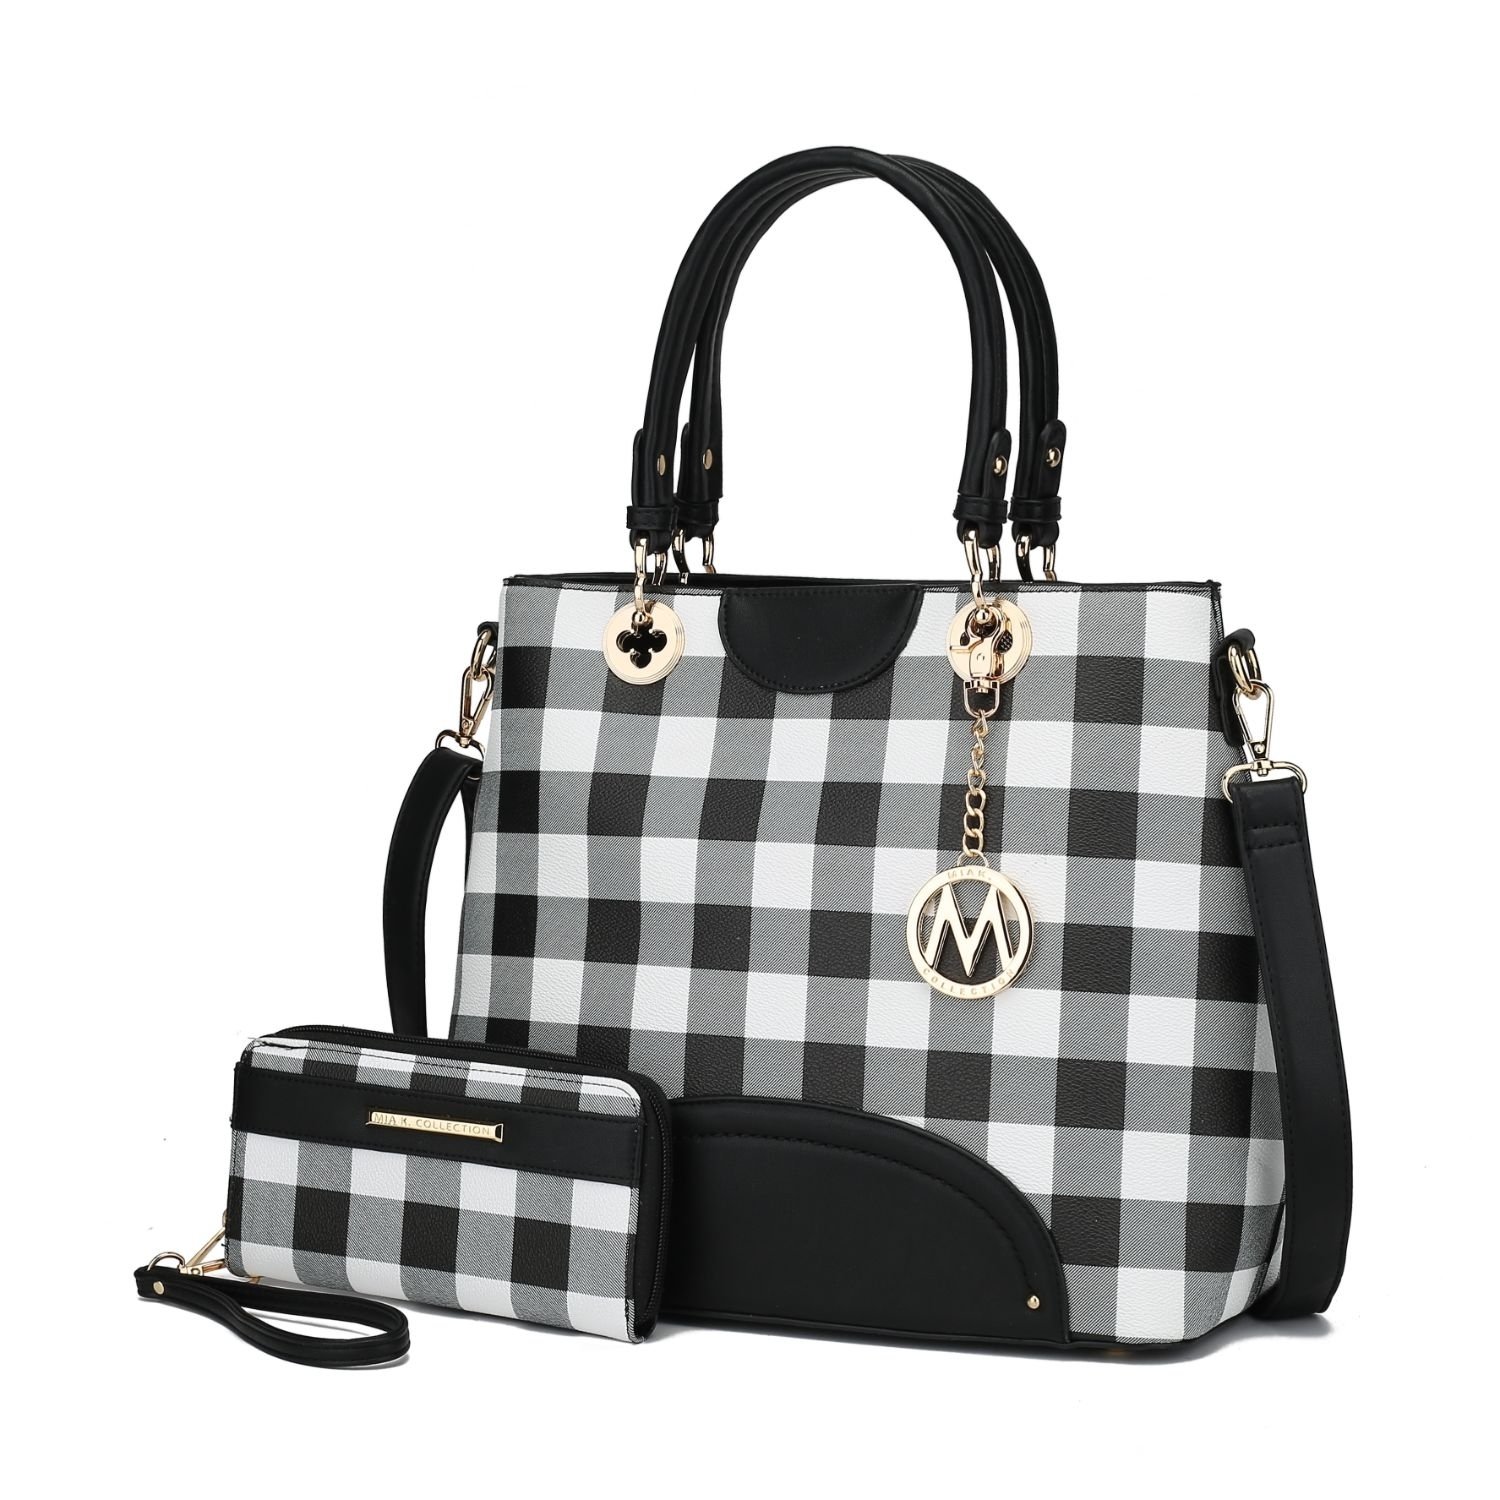 MKF Collection Gabriella Checkers Tote Handbag With Wallet By Mia K. - Black